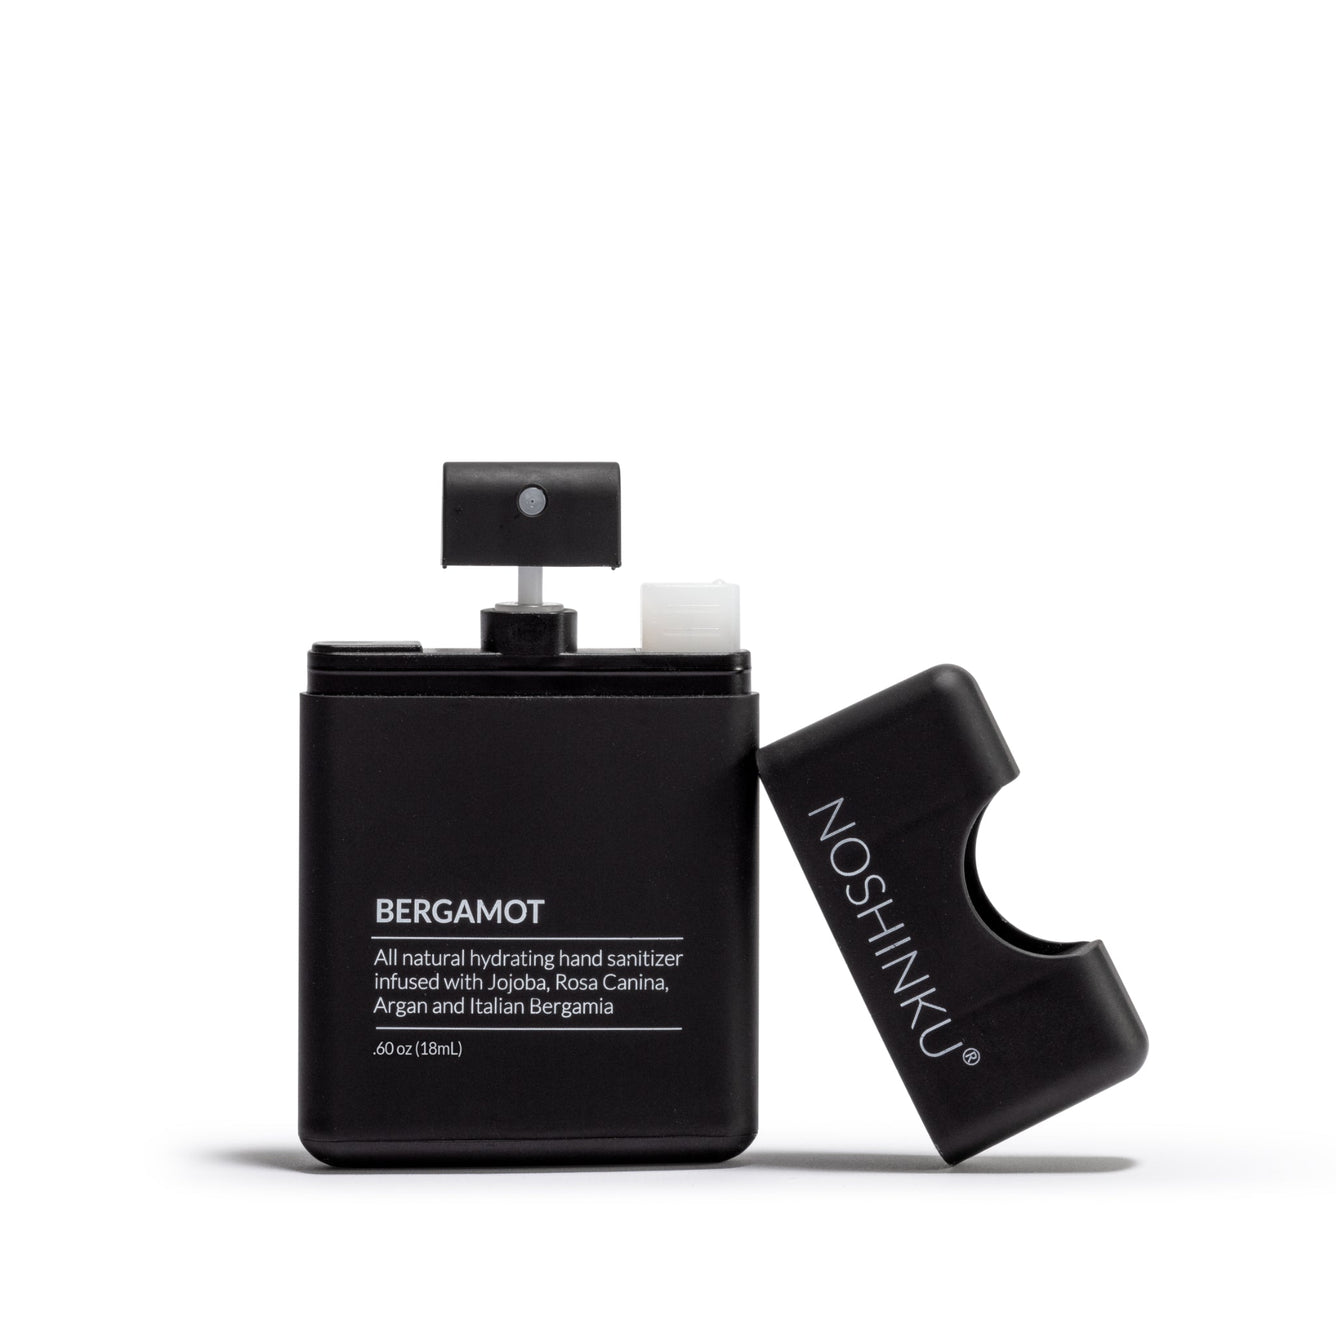 Limited Edition NYC Bergamot Pocket Sprayer